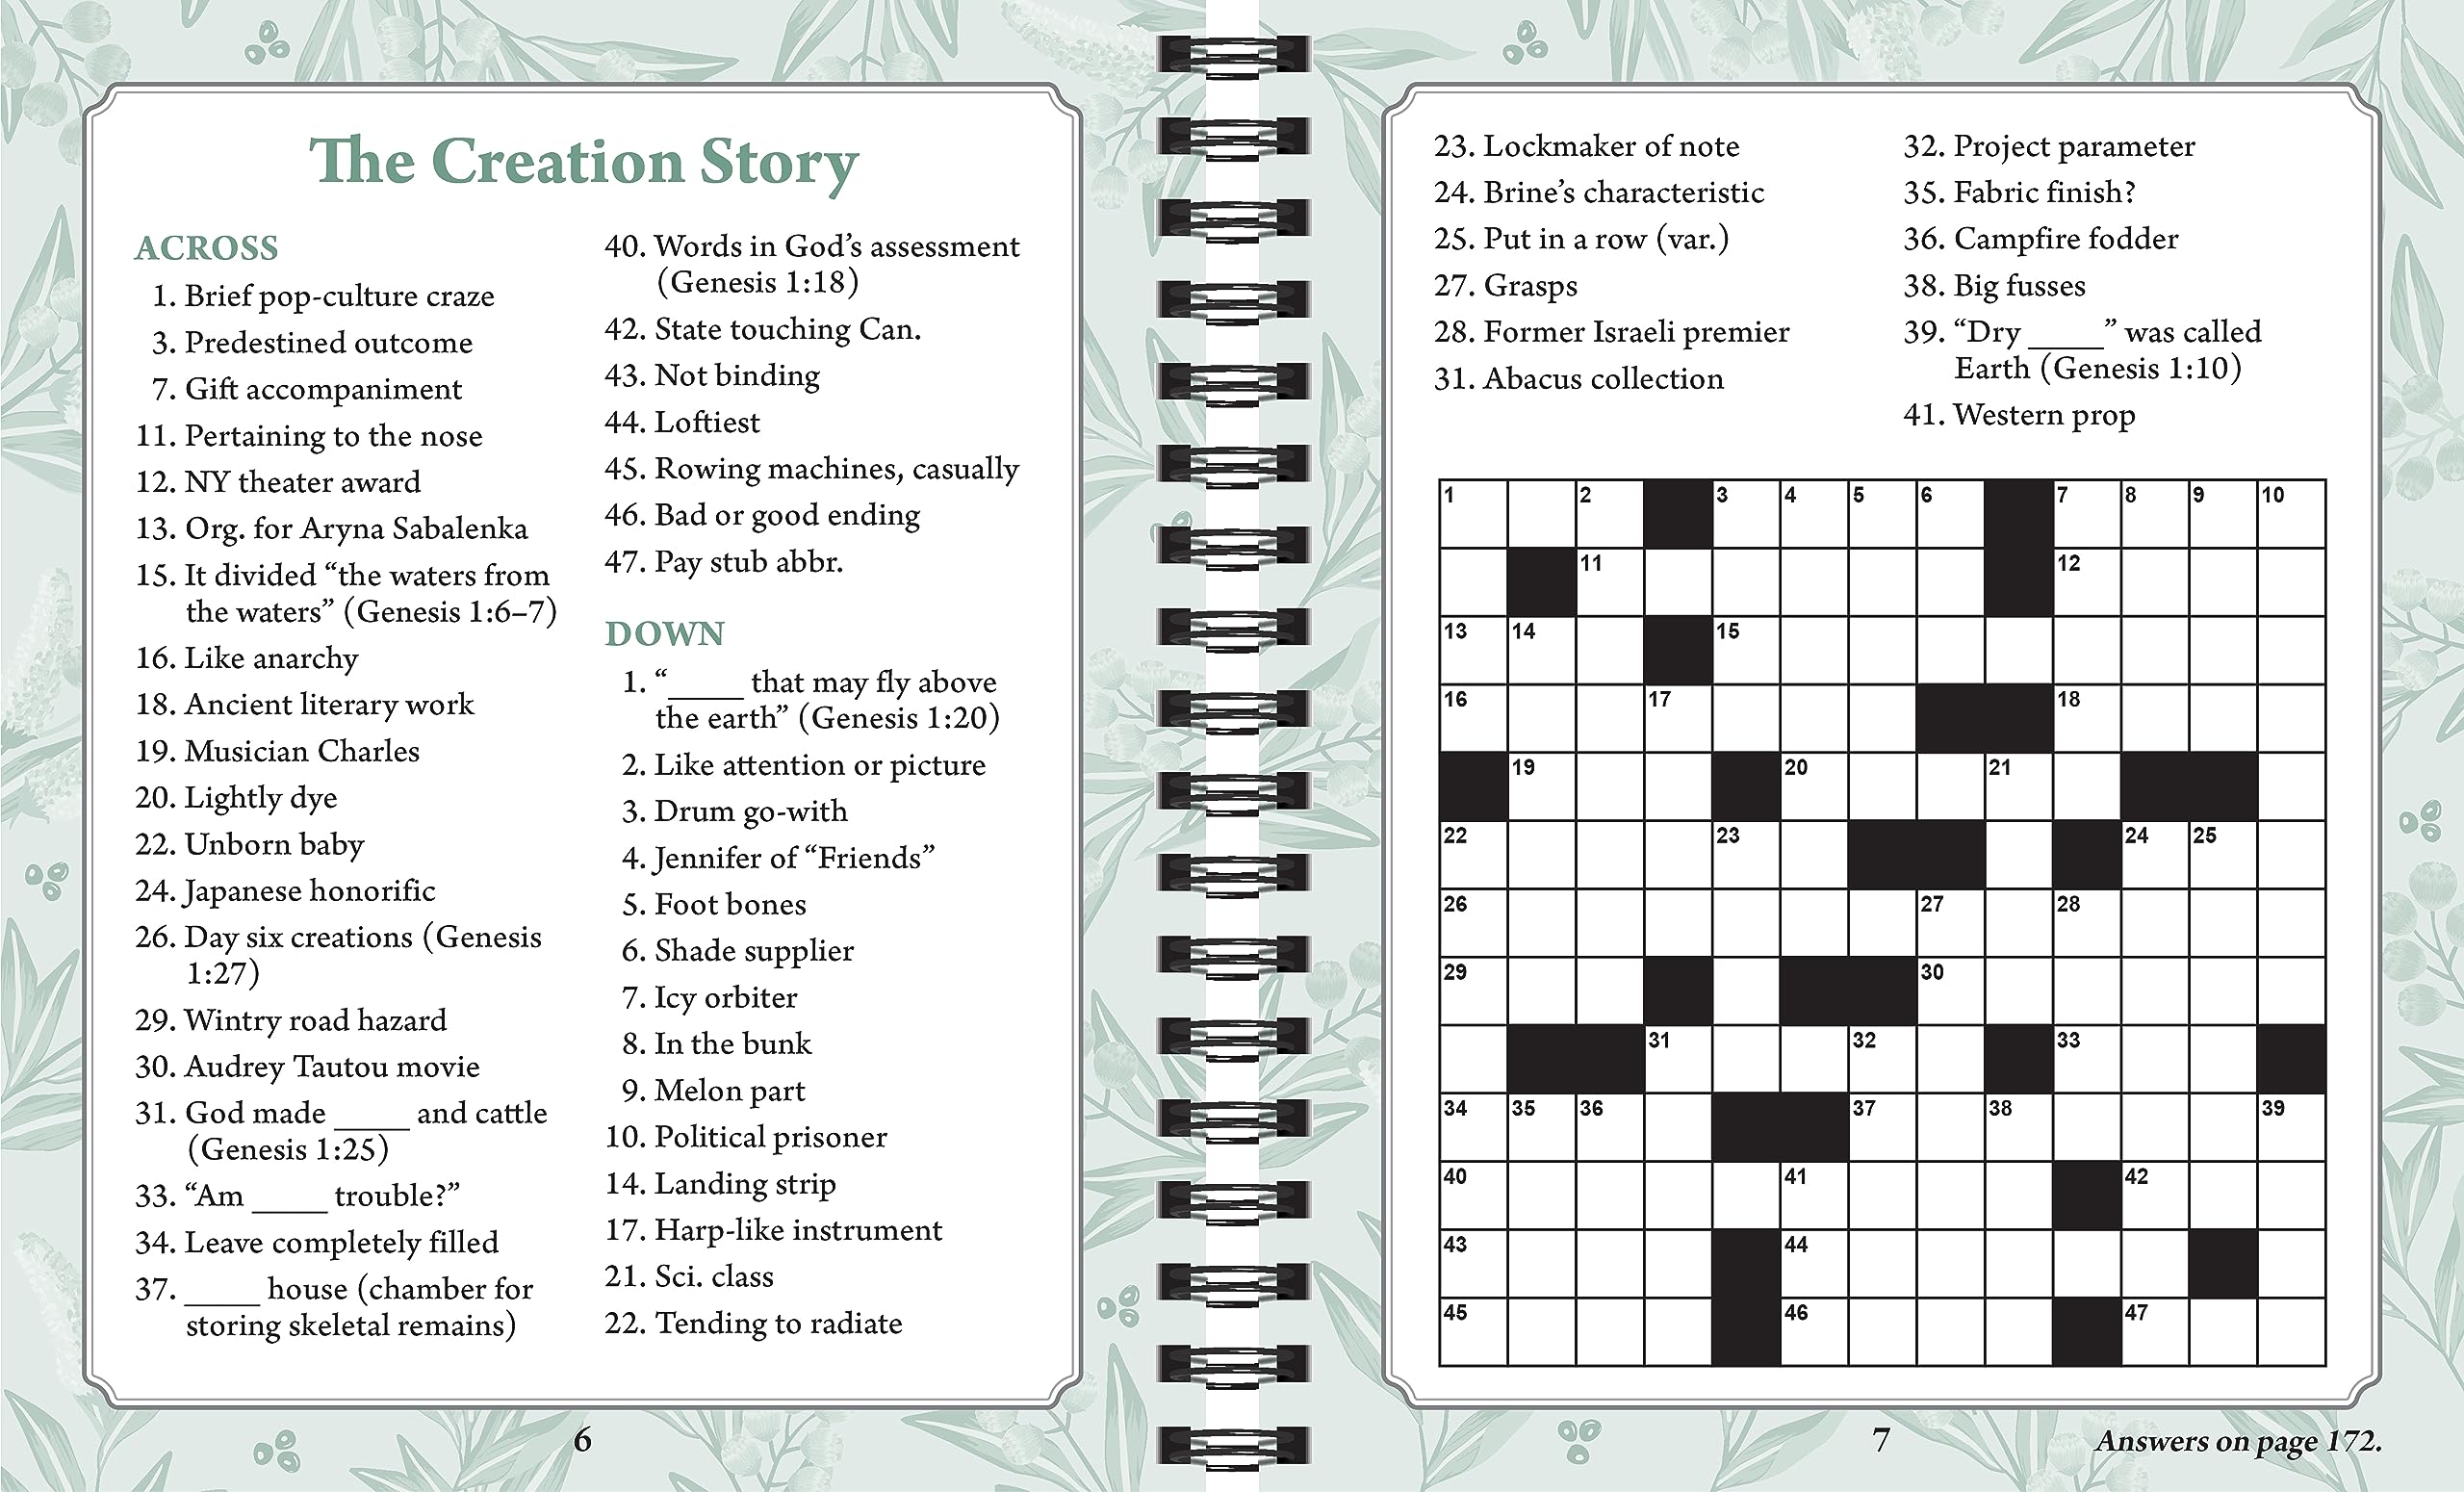 Brain Games - Bible Crossword Puzzles: Prayers, Parables & Prophets - Large Print